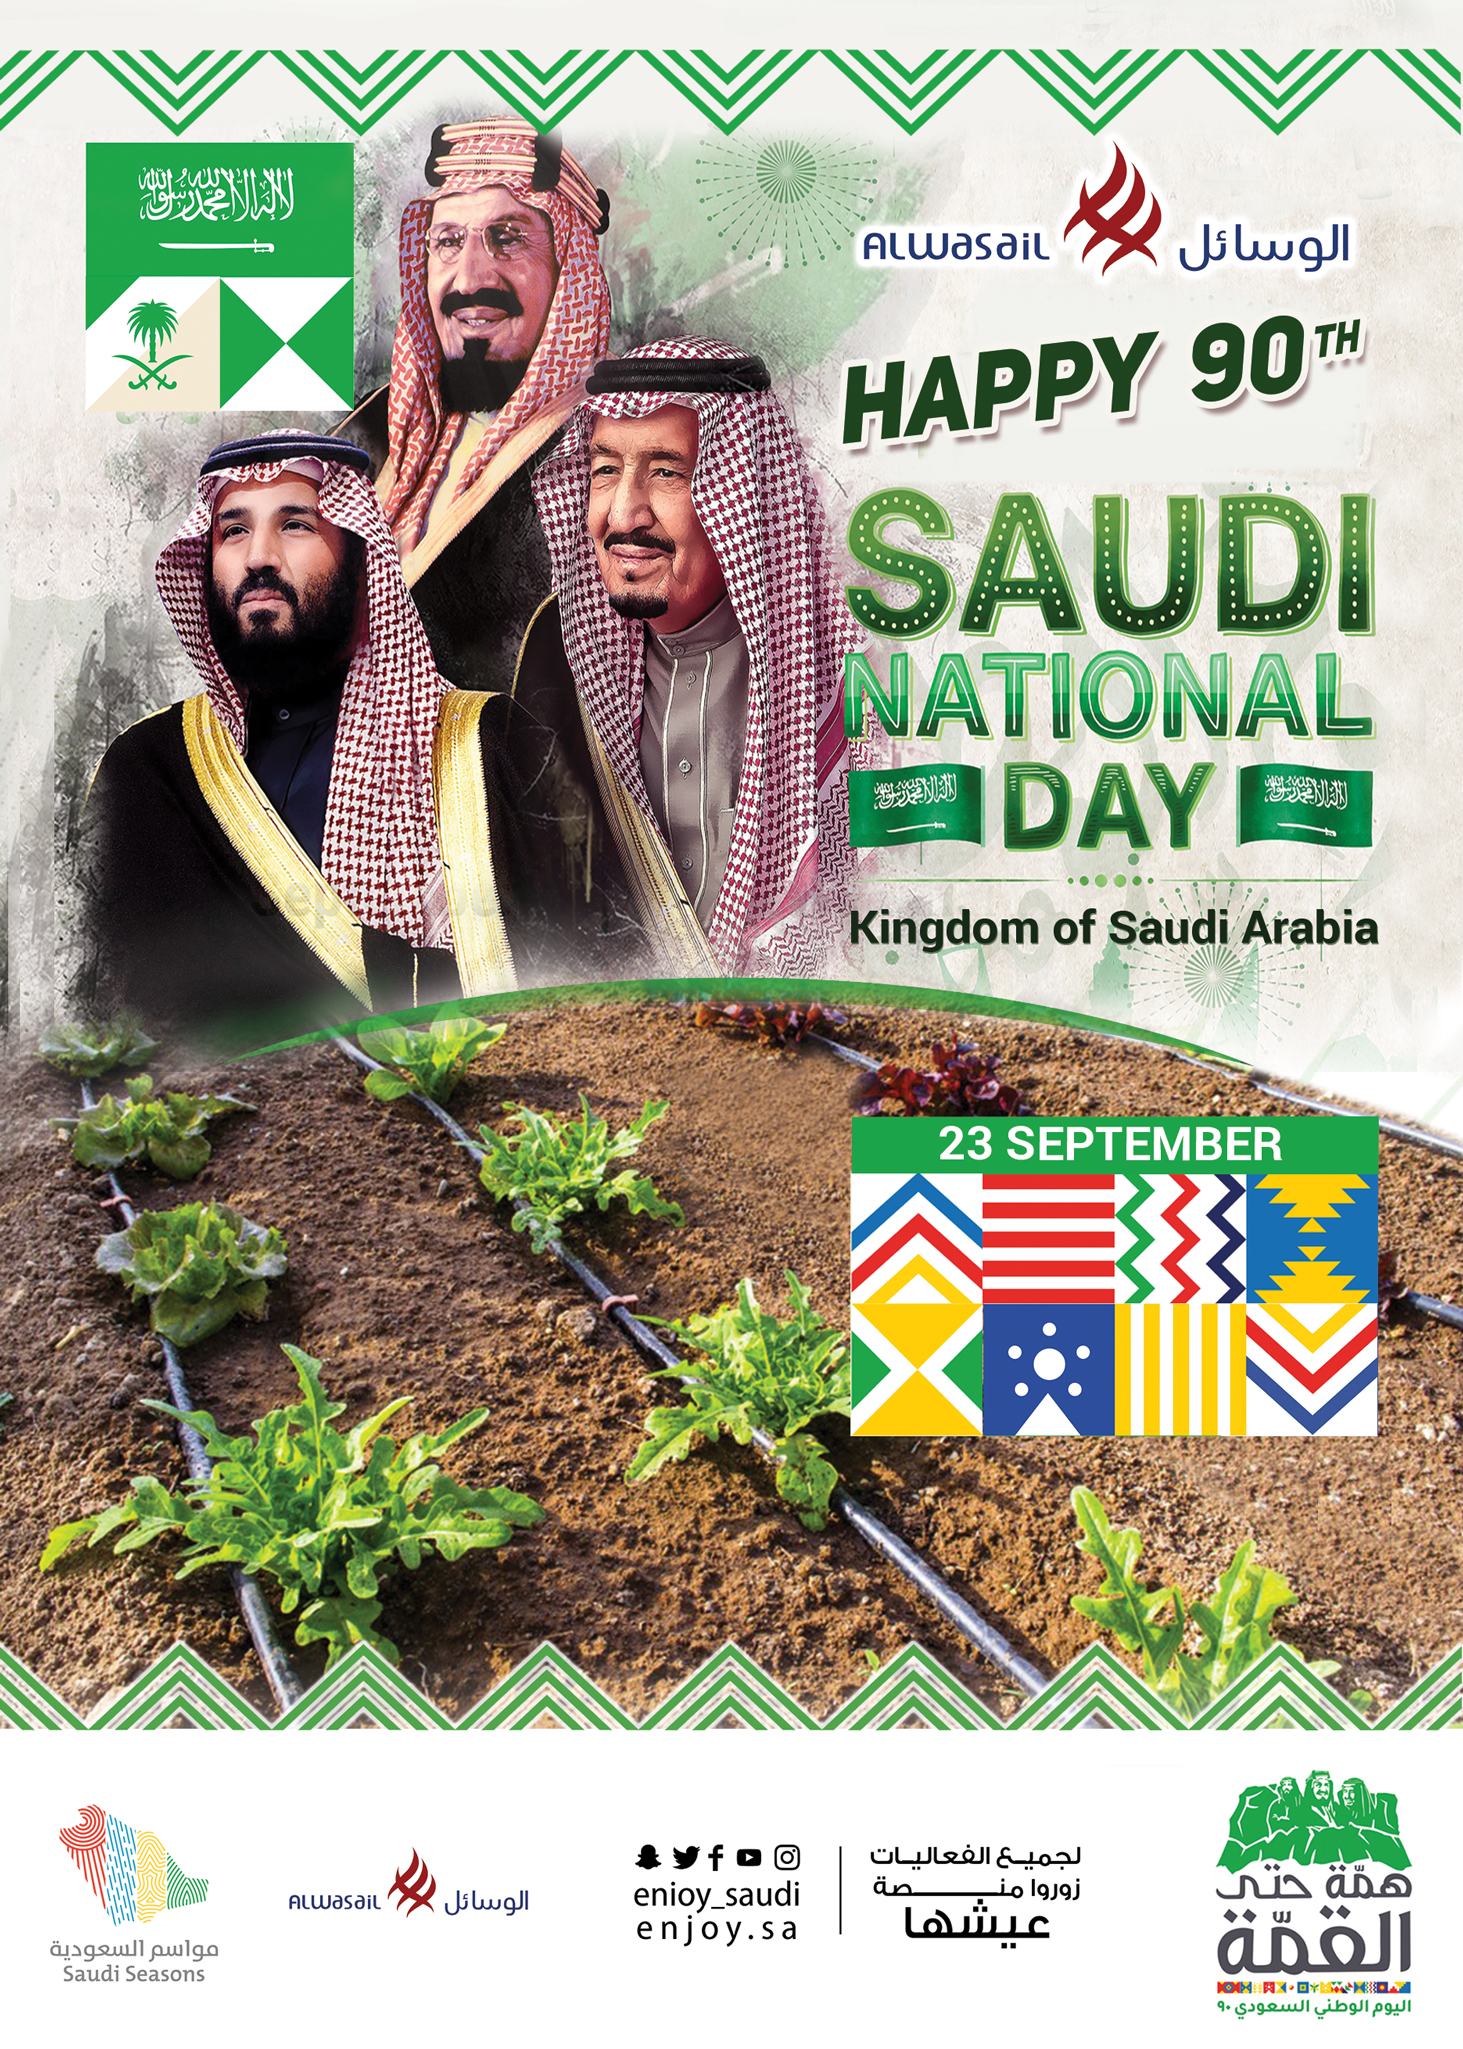 Happy 90th National Day, Kingdom of Saudi Arabia